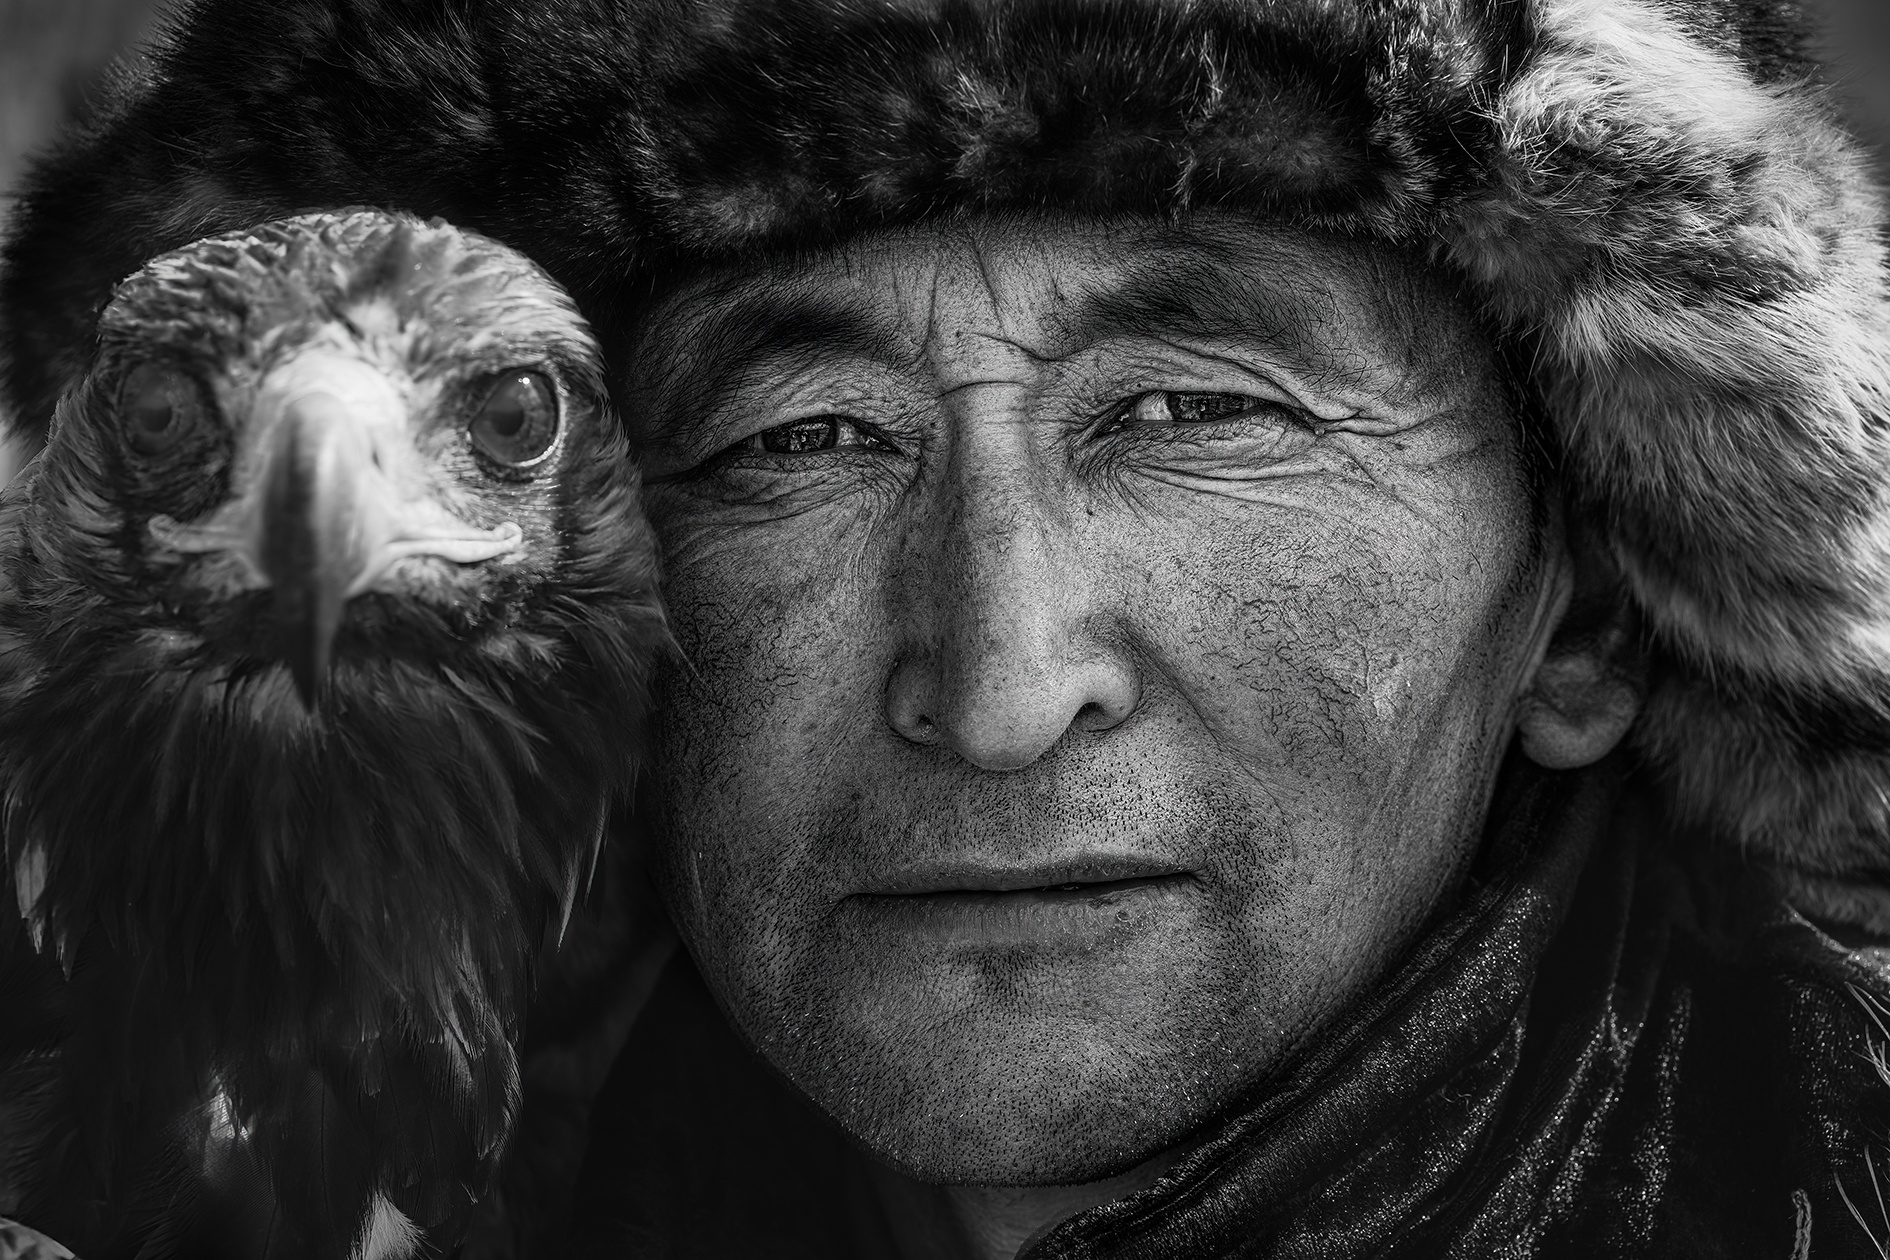 Иркутян приглашают на фотовыставку «Под небом Монголии» 1 декабря